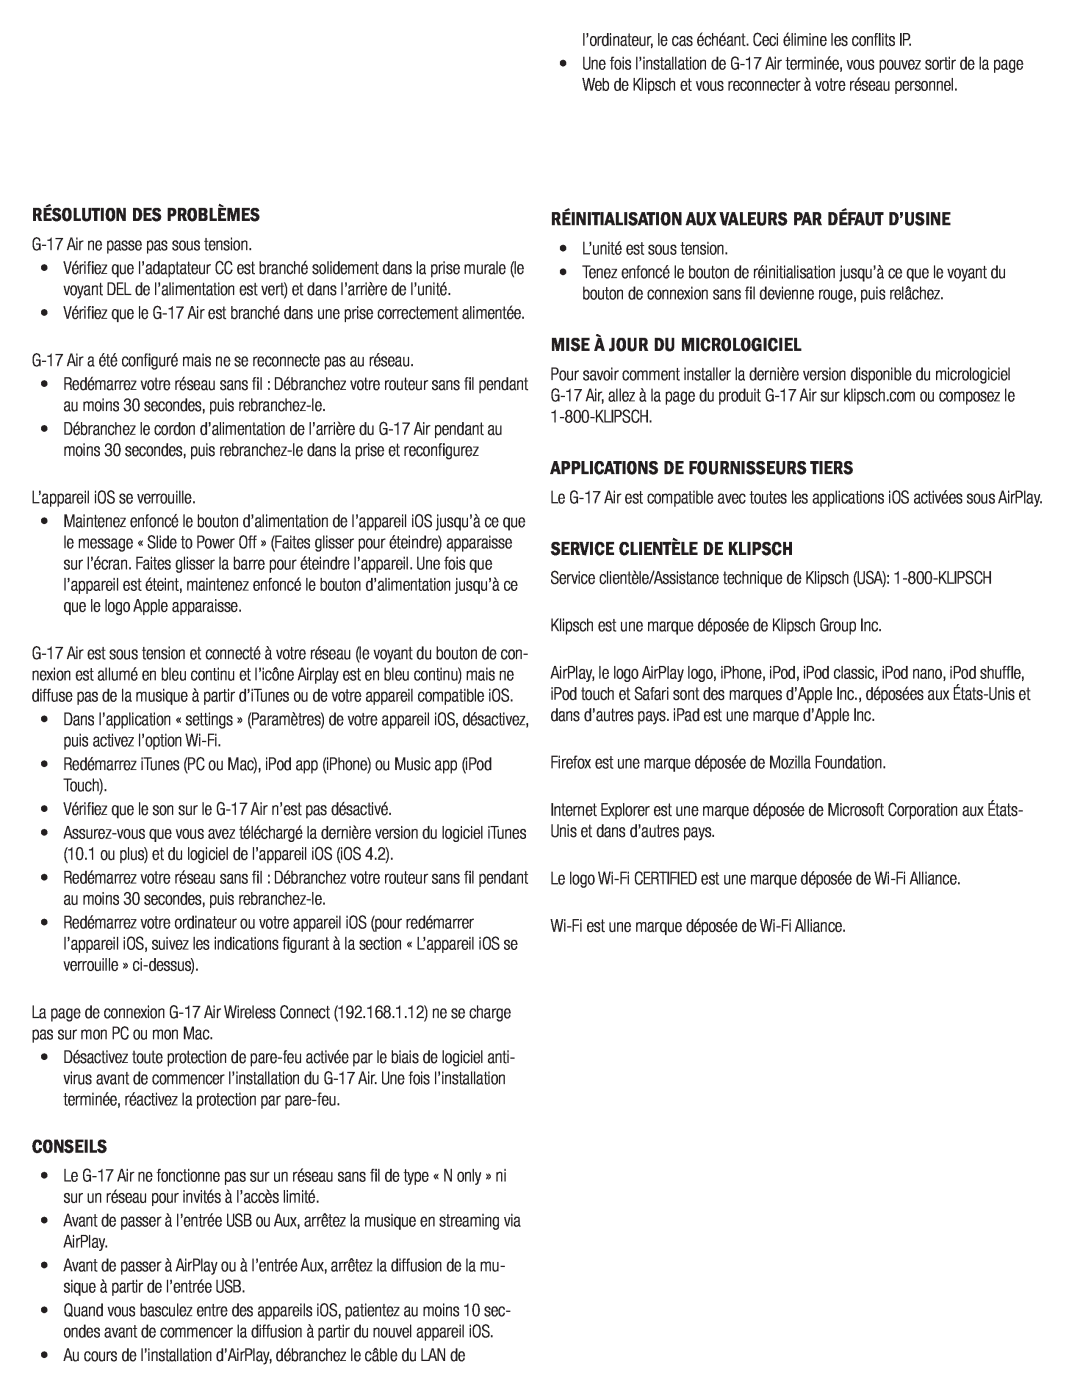 Klipsch G-17 AIR owner manual Résolution Des Problèmes, Réinitialisation Aux Valeurs Par Défaut D’Usine, Conseils 